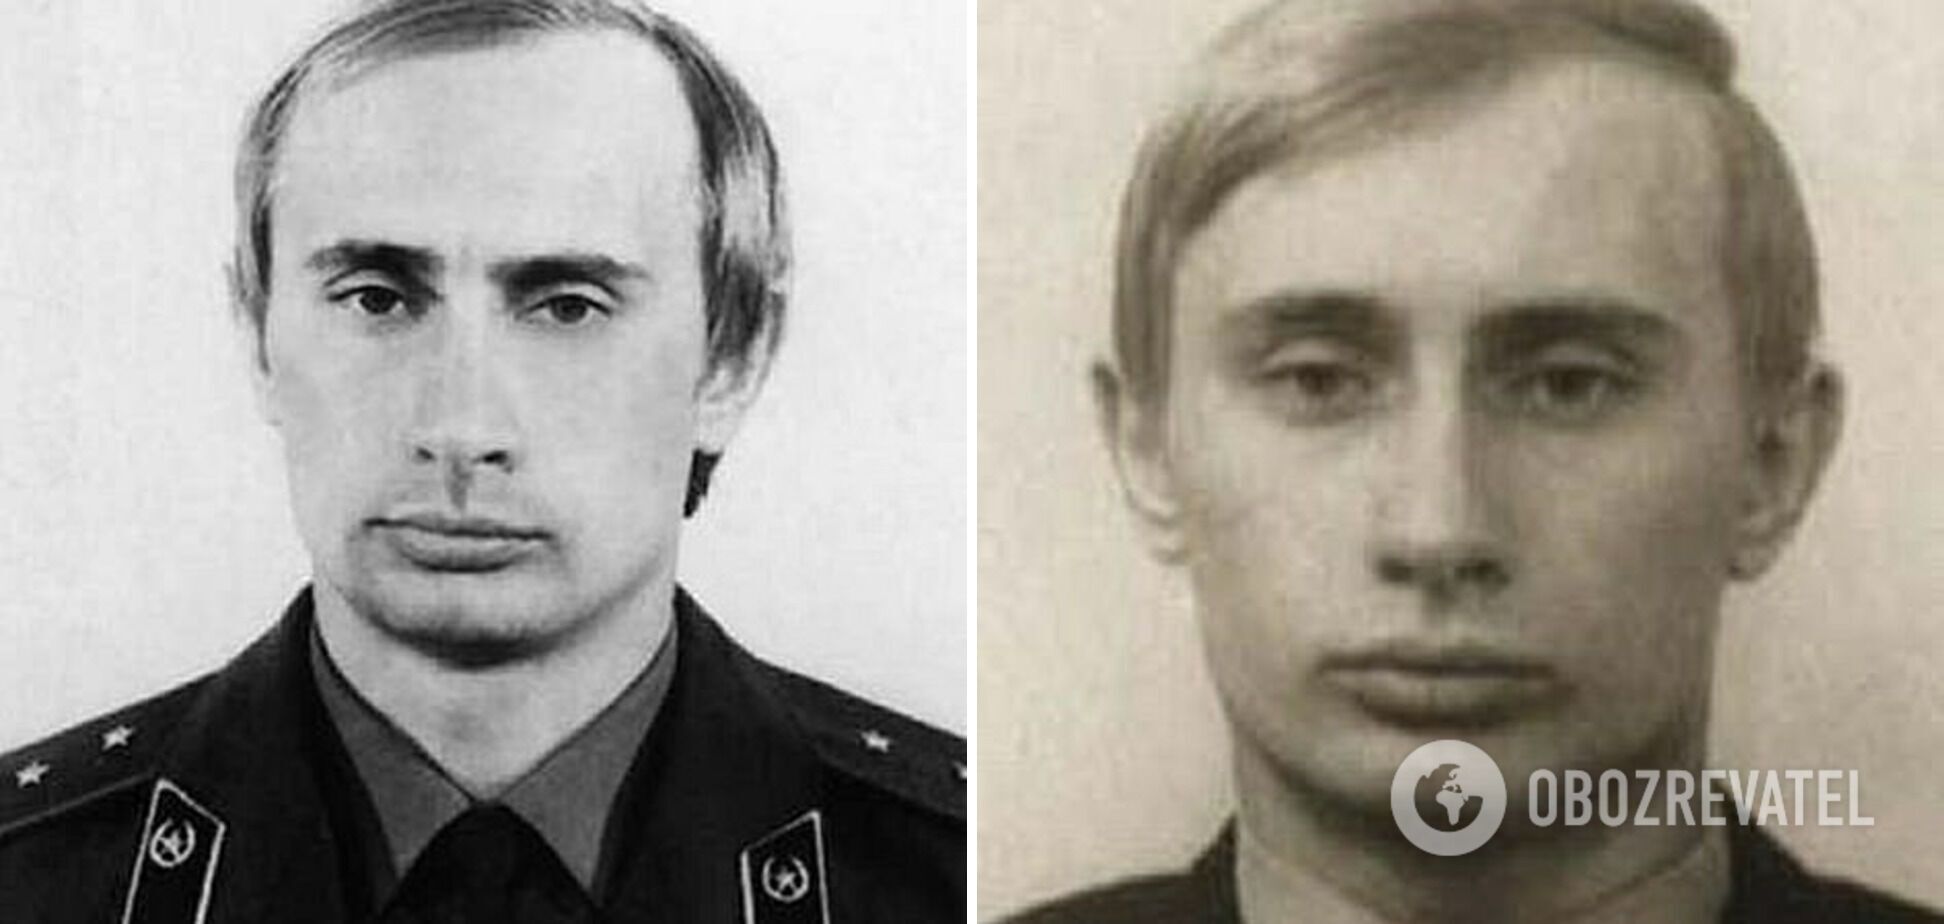 Як виглядав Путін під час служби в КДБ.